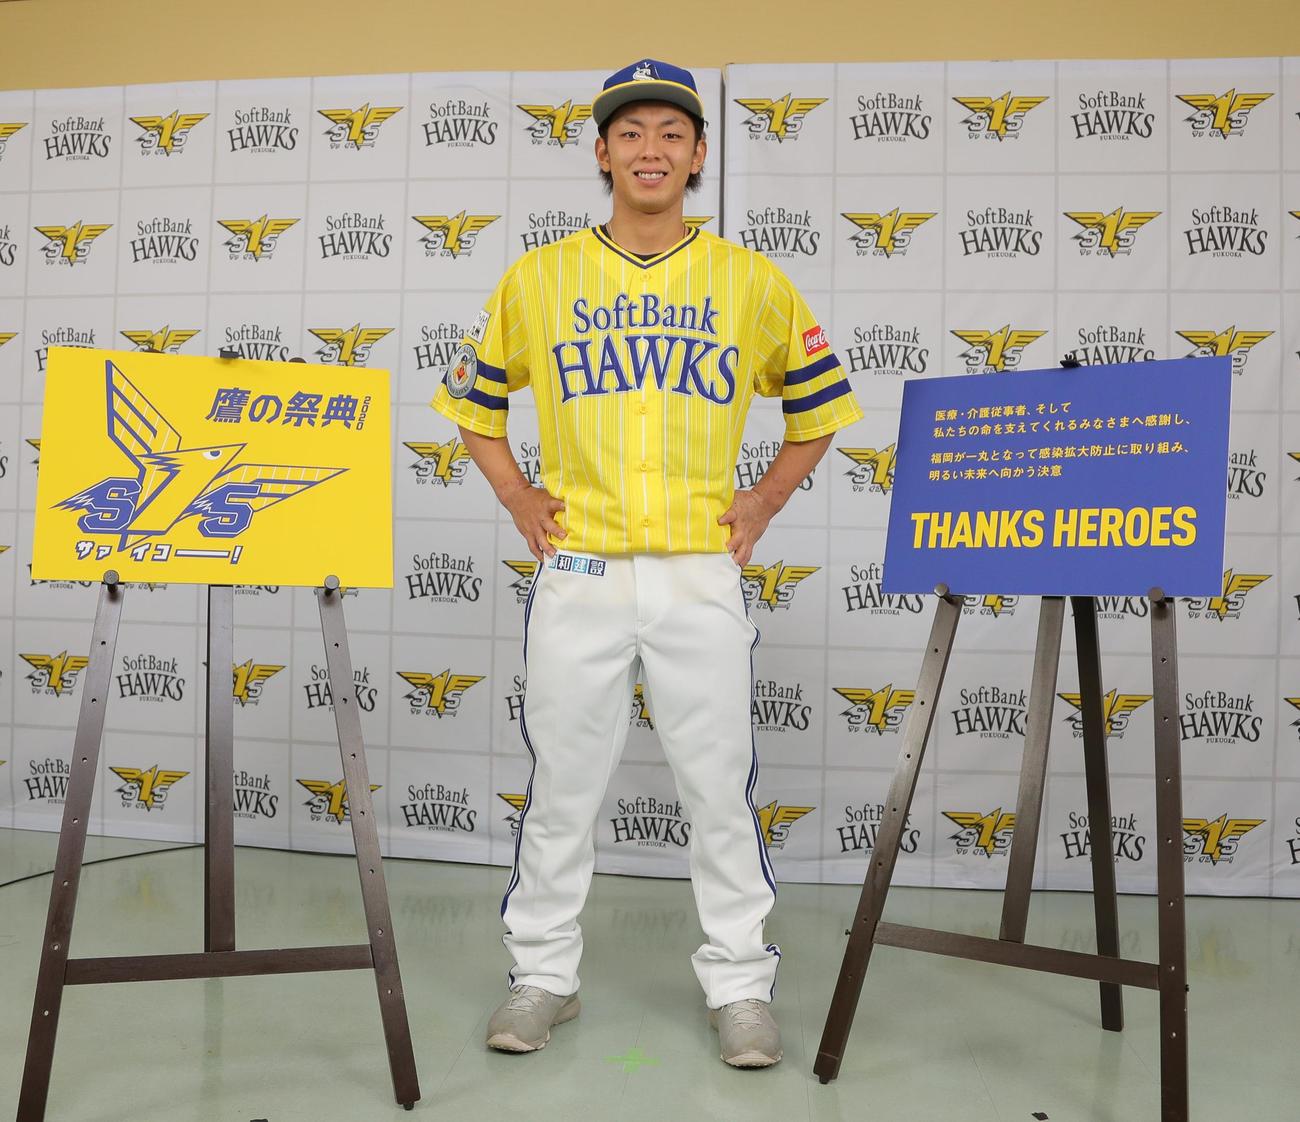 ソフトバンク、今季は黄色と青で特別な「鷹の祭典」 - プロ野球写真ニュース : 日刊スポーツ